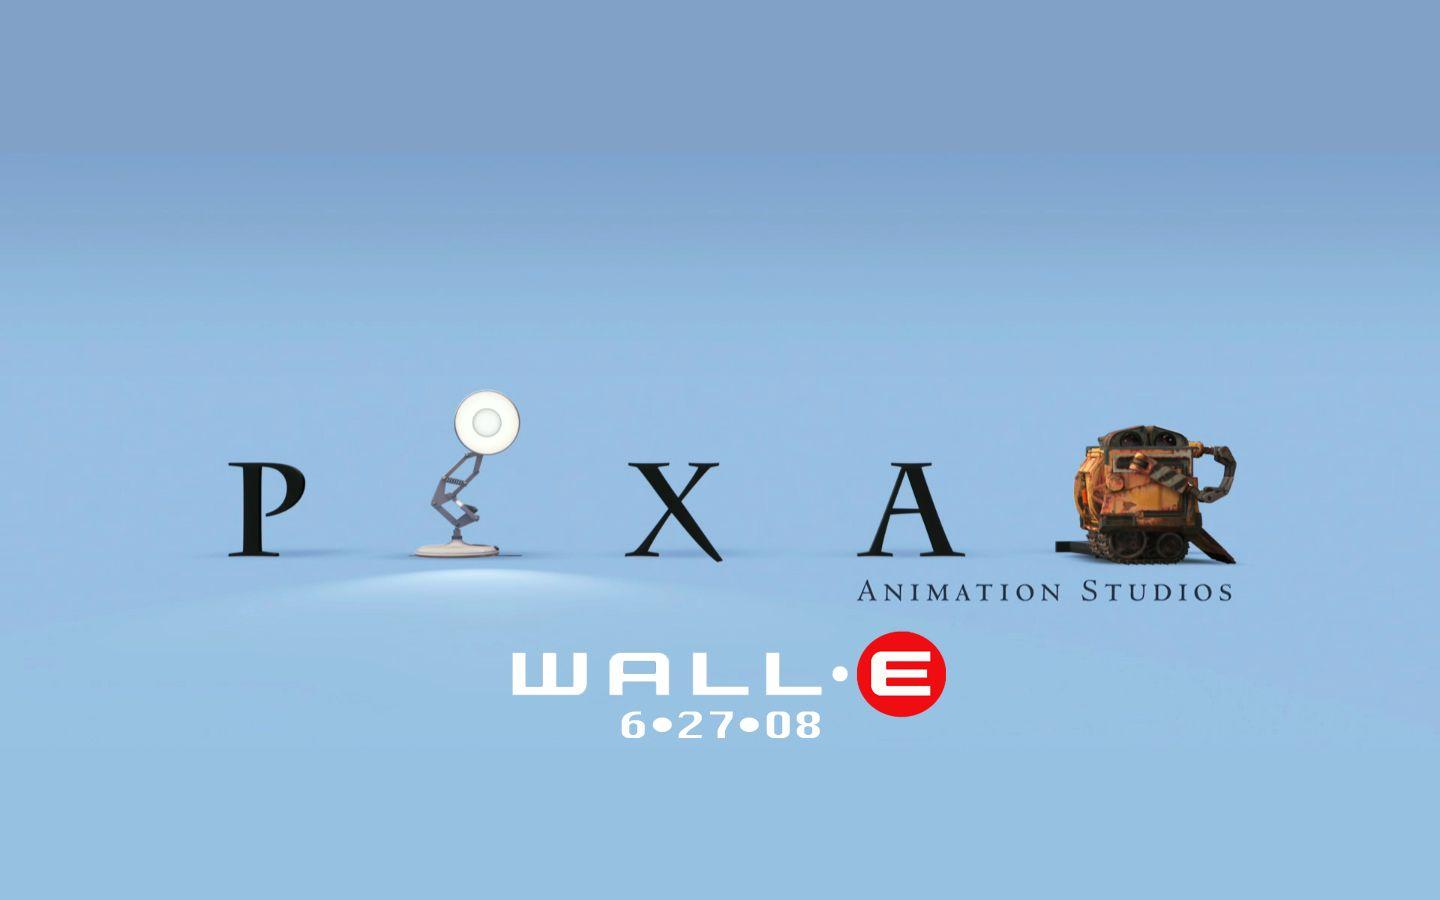 Disney Pixar Wall E Tattoo - wide 8